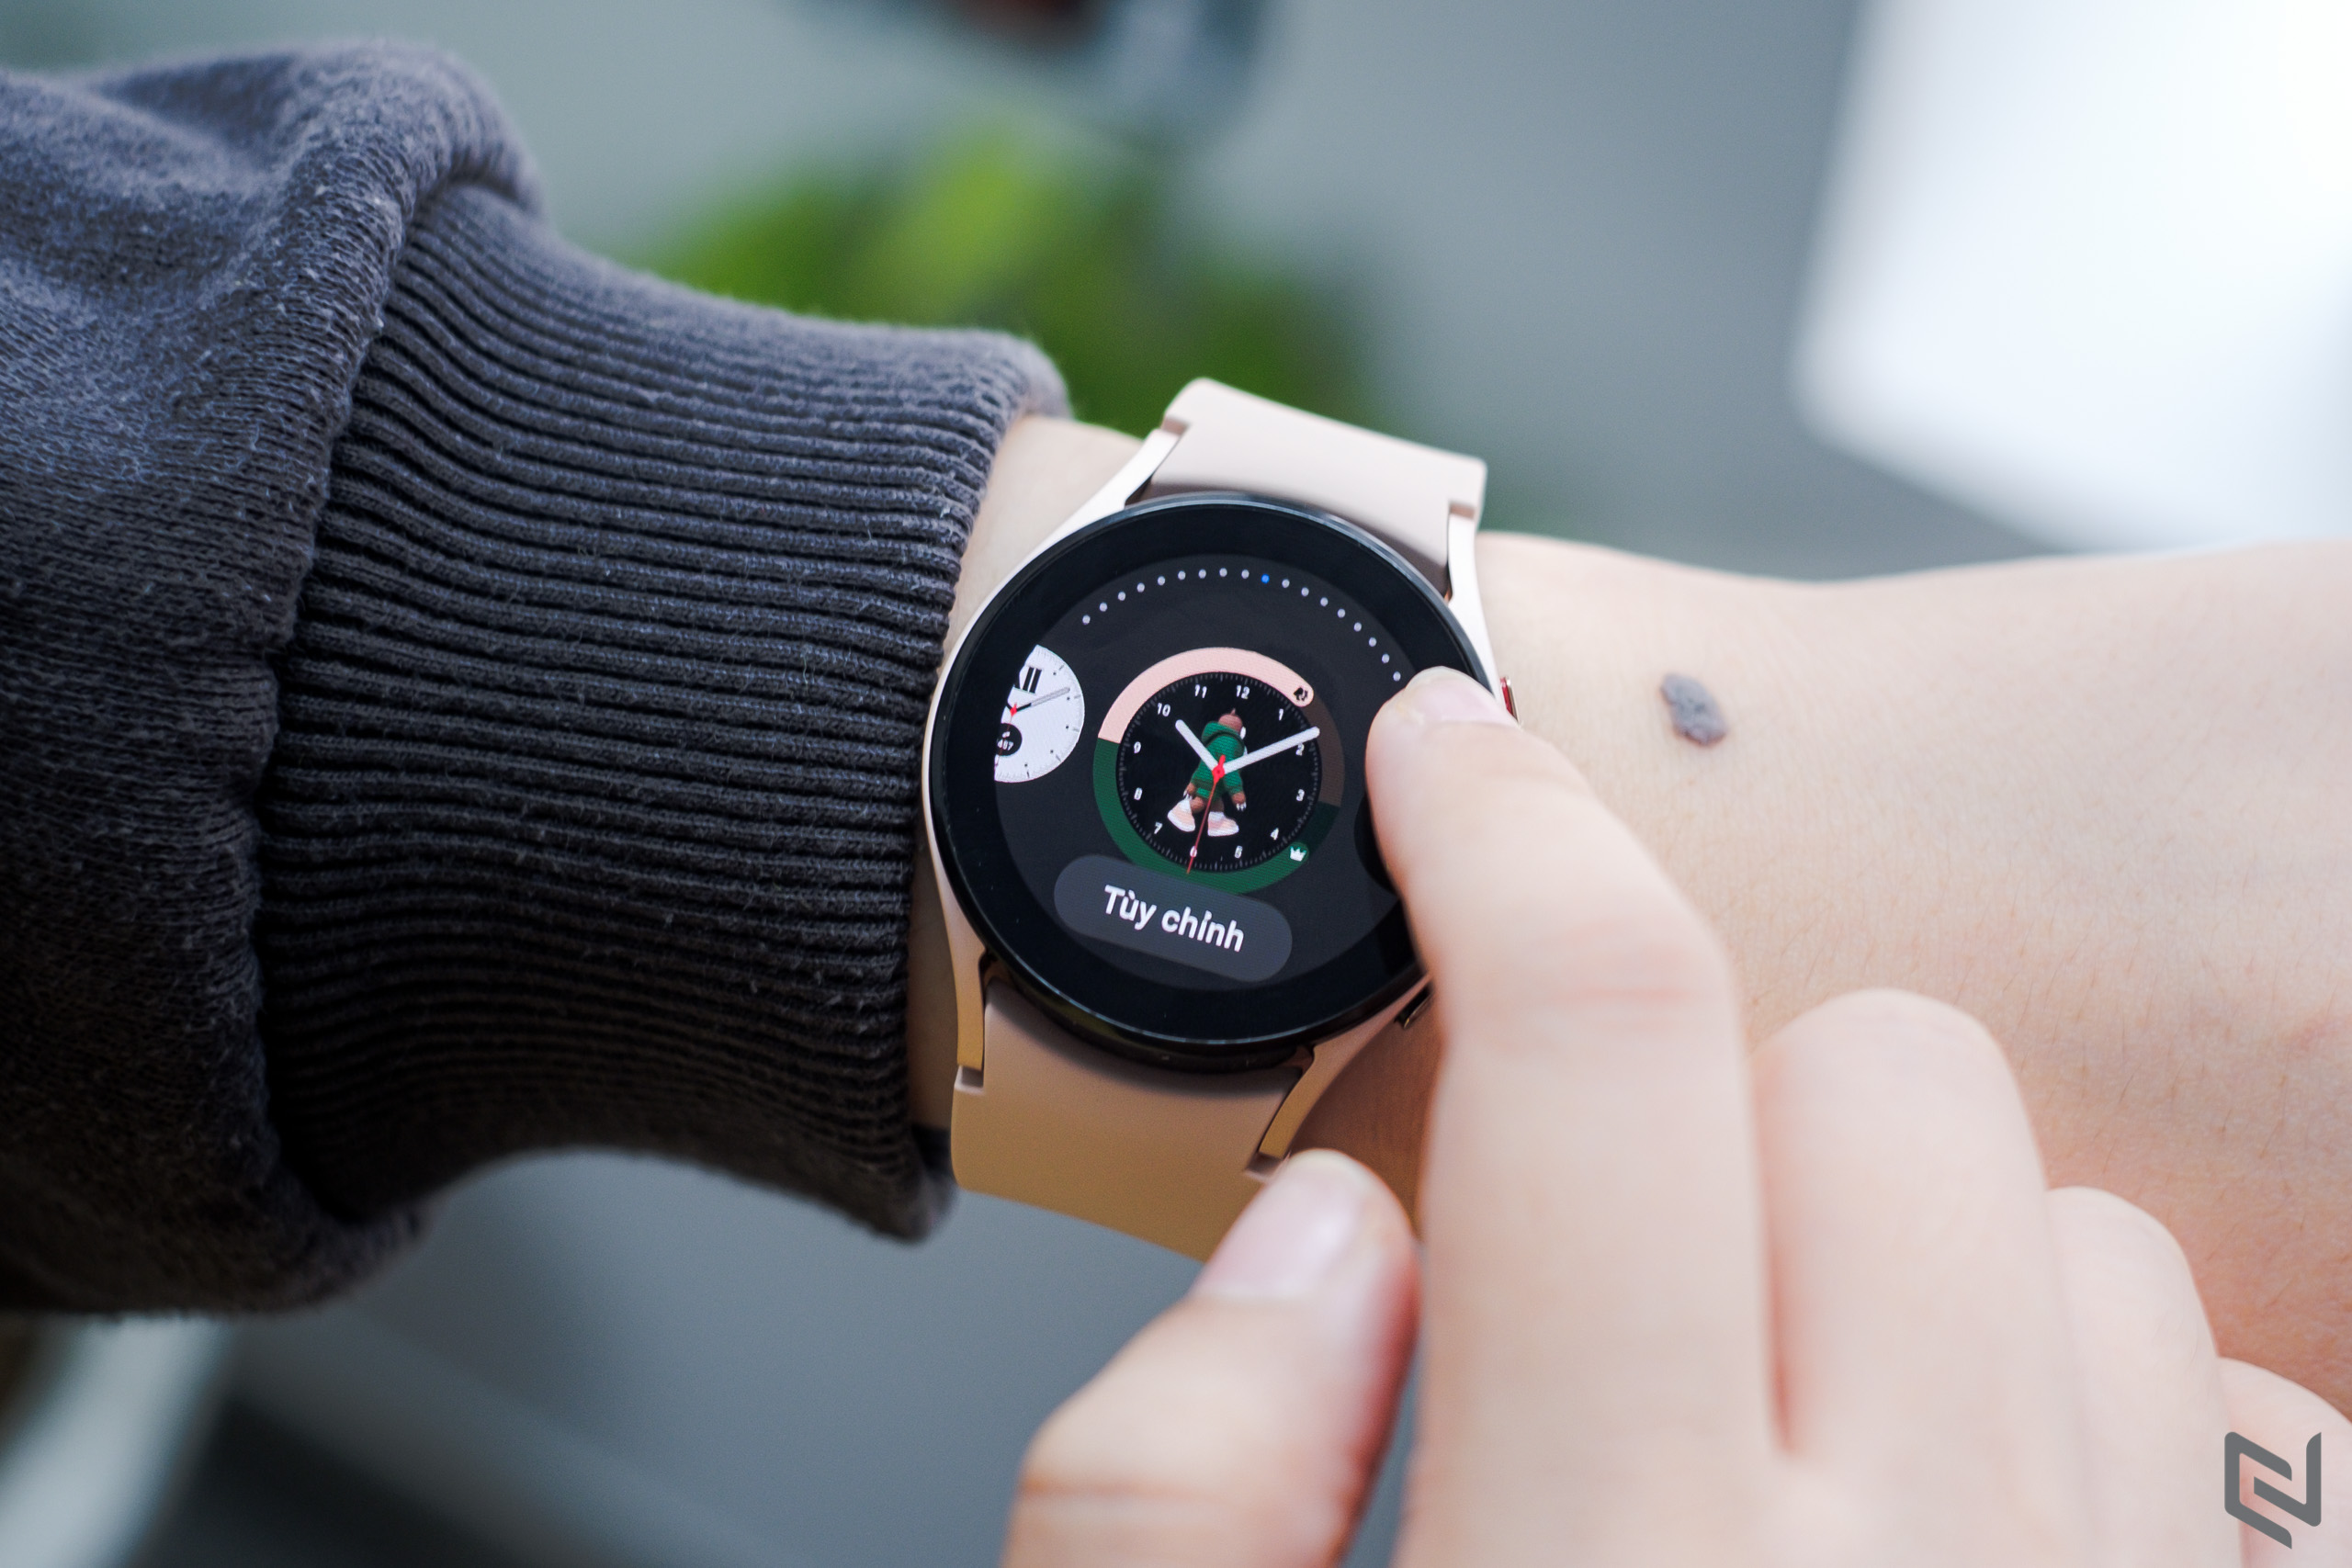 Top 5 tính năng nổi bật trên Galaxy Watch4 - Smartwatch chạy WearOS đáng mua nhất